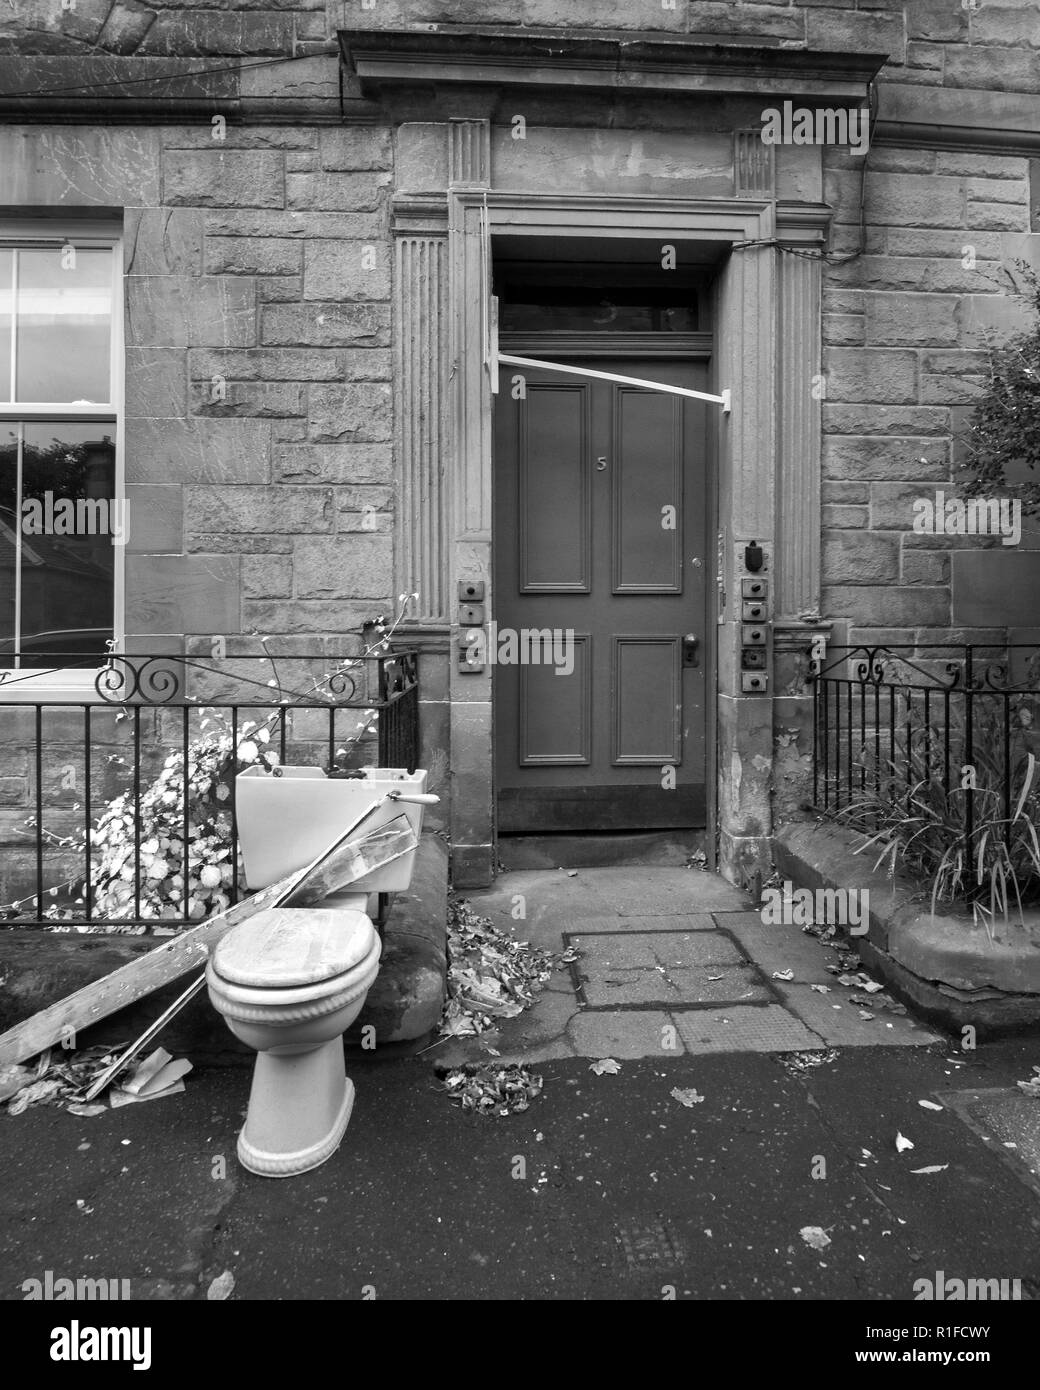 Édimbourg, Écosse - 10 NOVEMBRE 2018 : une toilette étant laissés à l'extérieur. Si tout va bien pour le bac pour recueillir les hommes. Banque D'Images